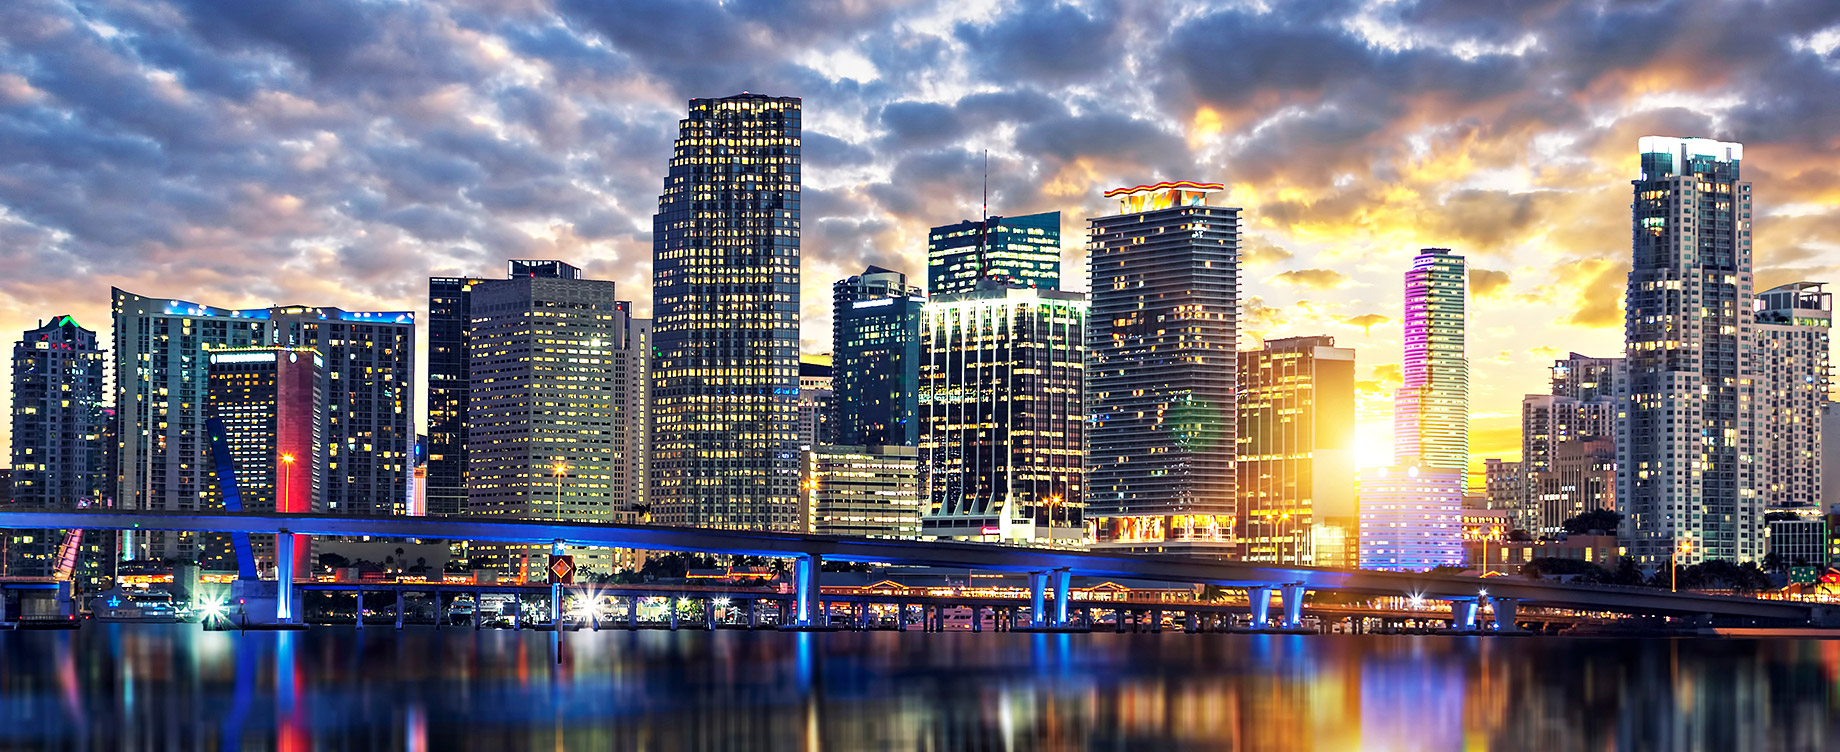 Miami, Florida Real Estate Market